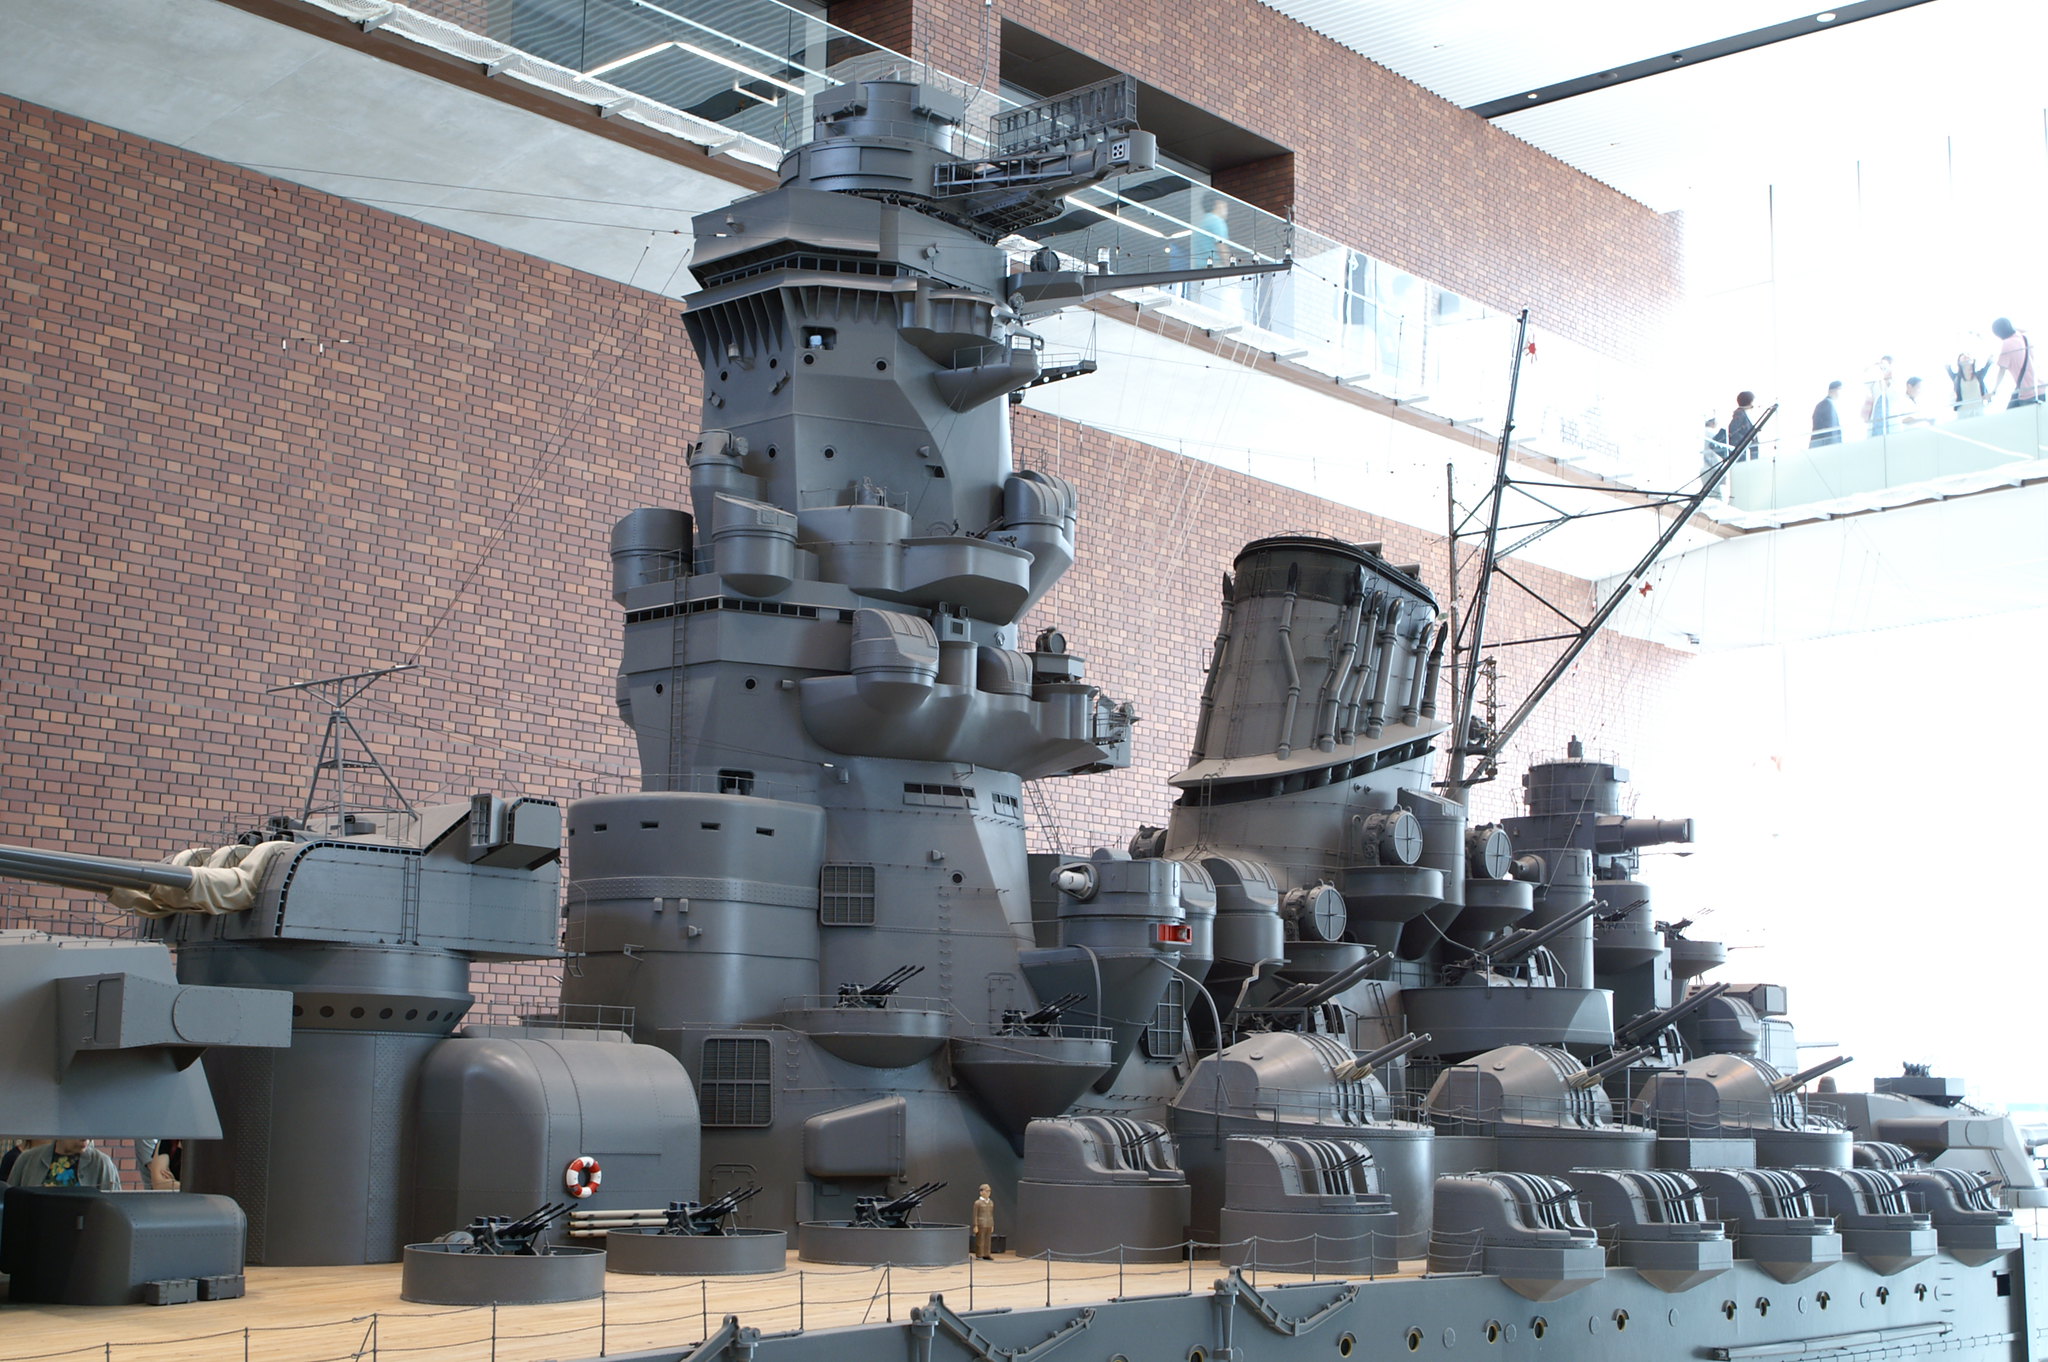 Battleship "YAMATO" @ Yamato Museum